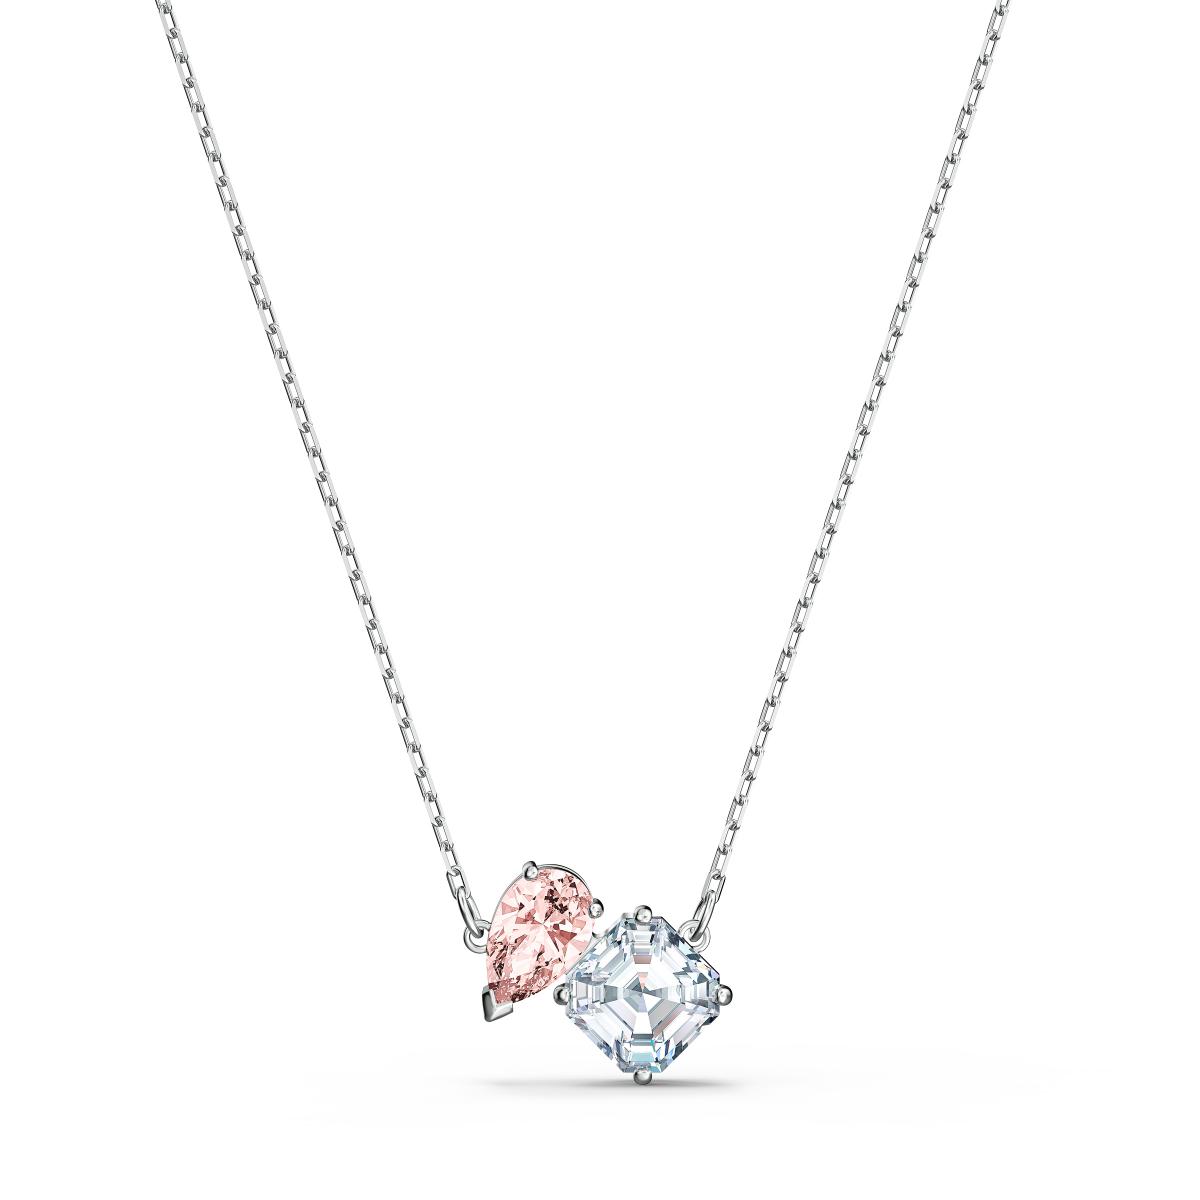 Collier Swarovski 5517115 - Collier métal rhodié blanc pendentif rose et cristal Femme